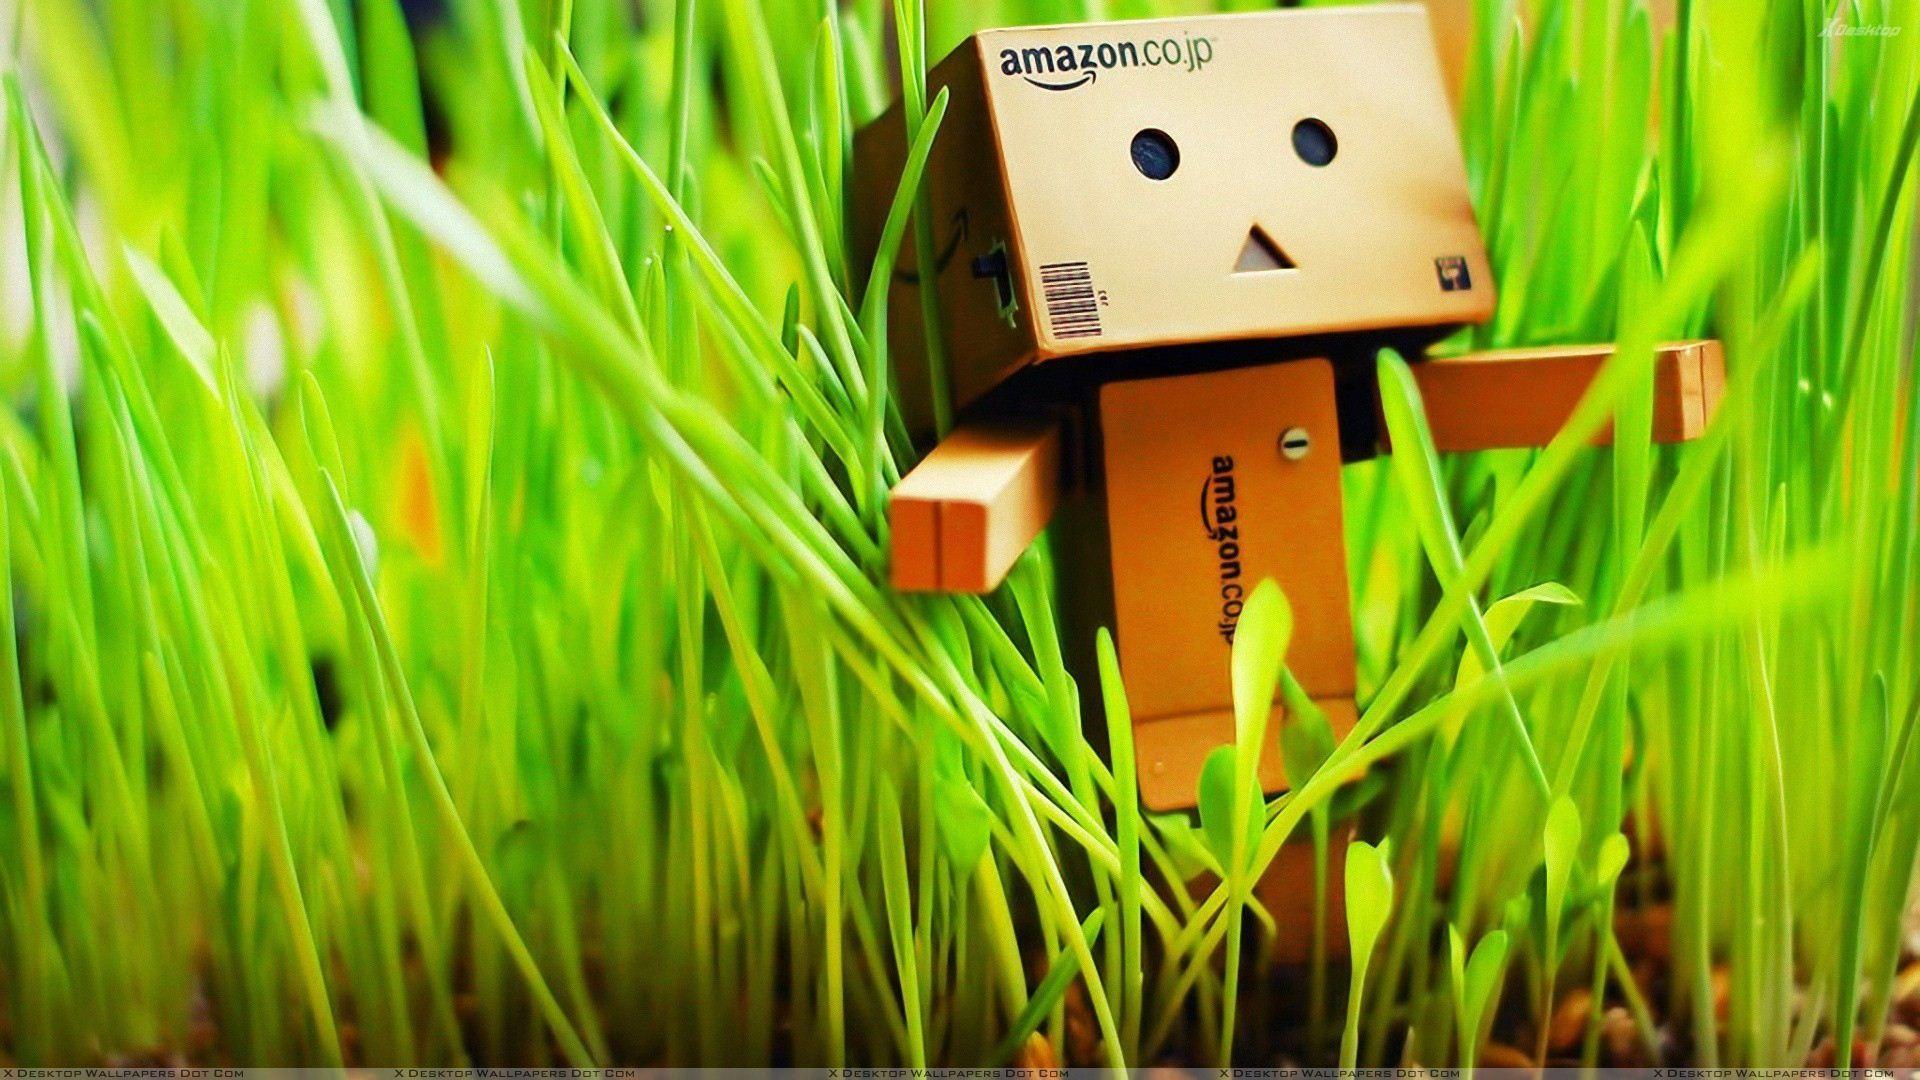 Amazon Box In Grass Wallpaper